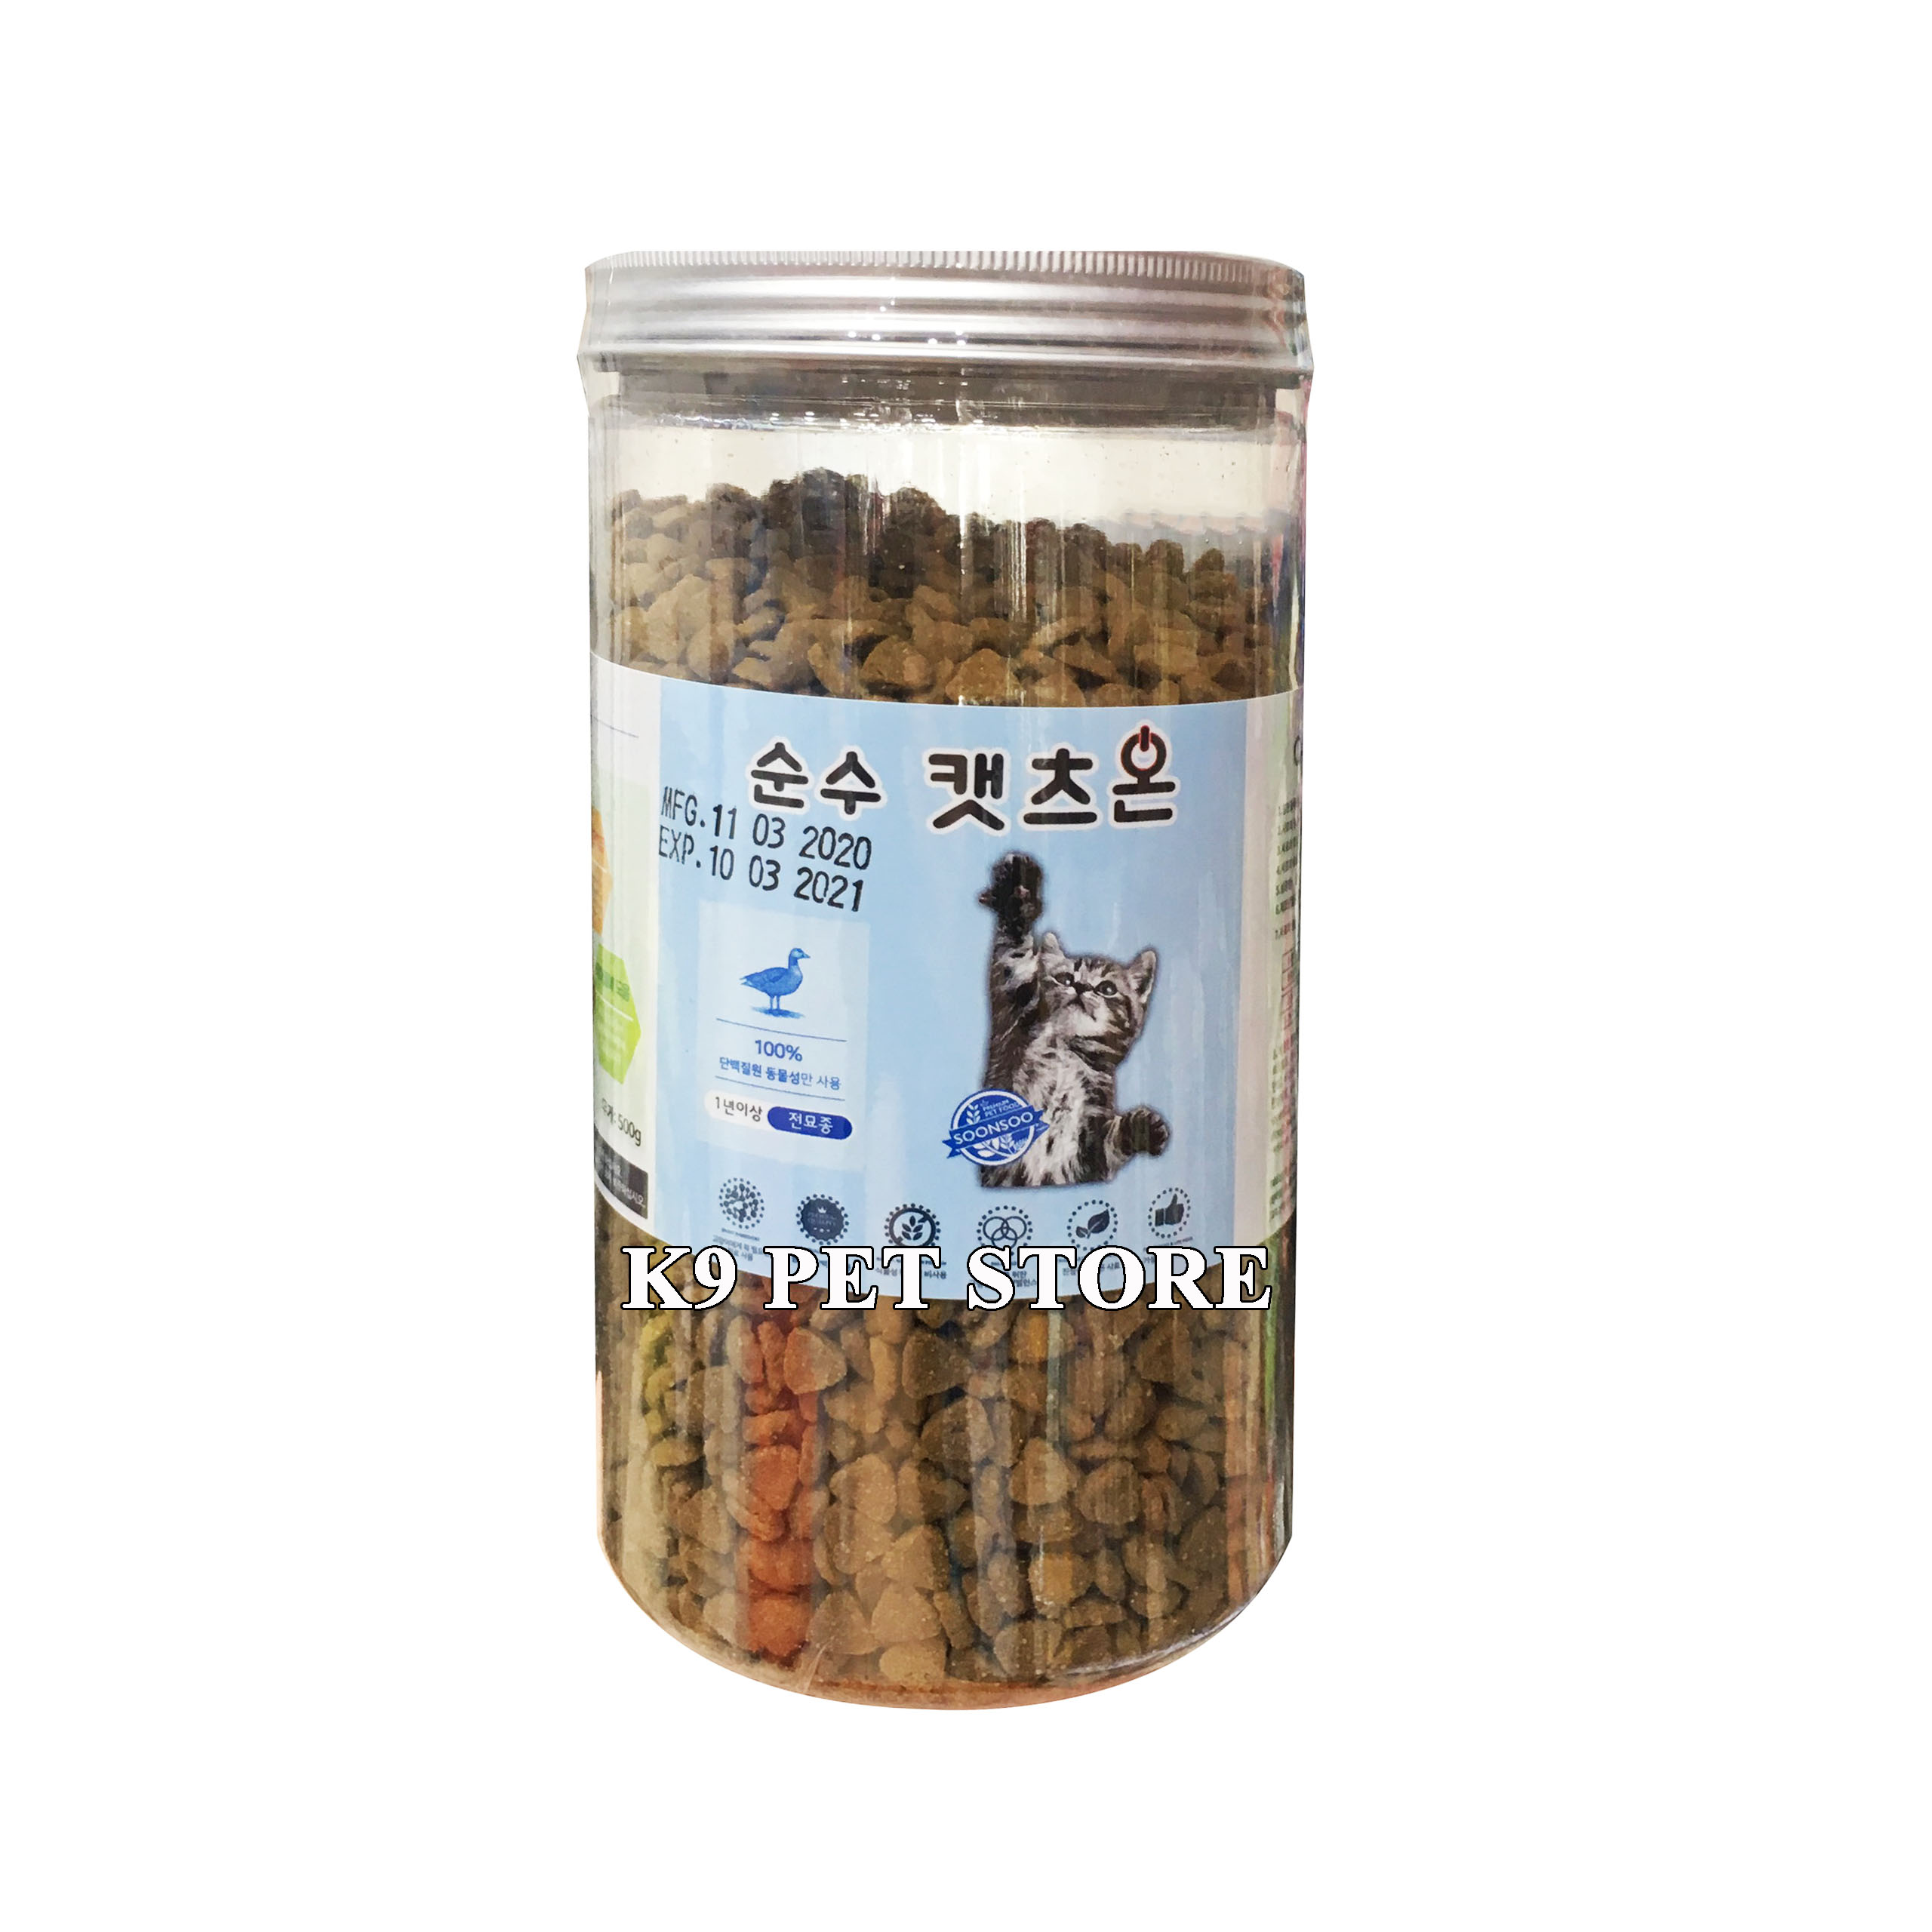 Thức ăn cho mèo Cat's On hộp 500g (Hàn Quốc)